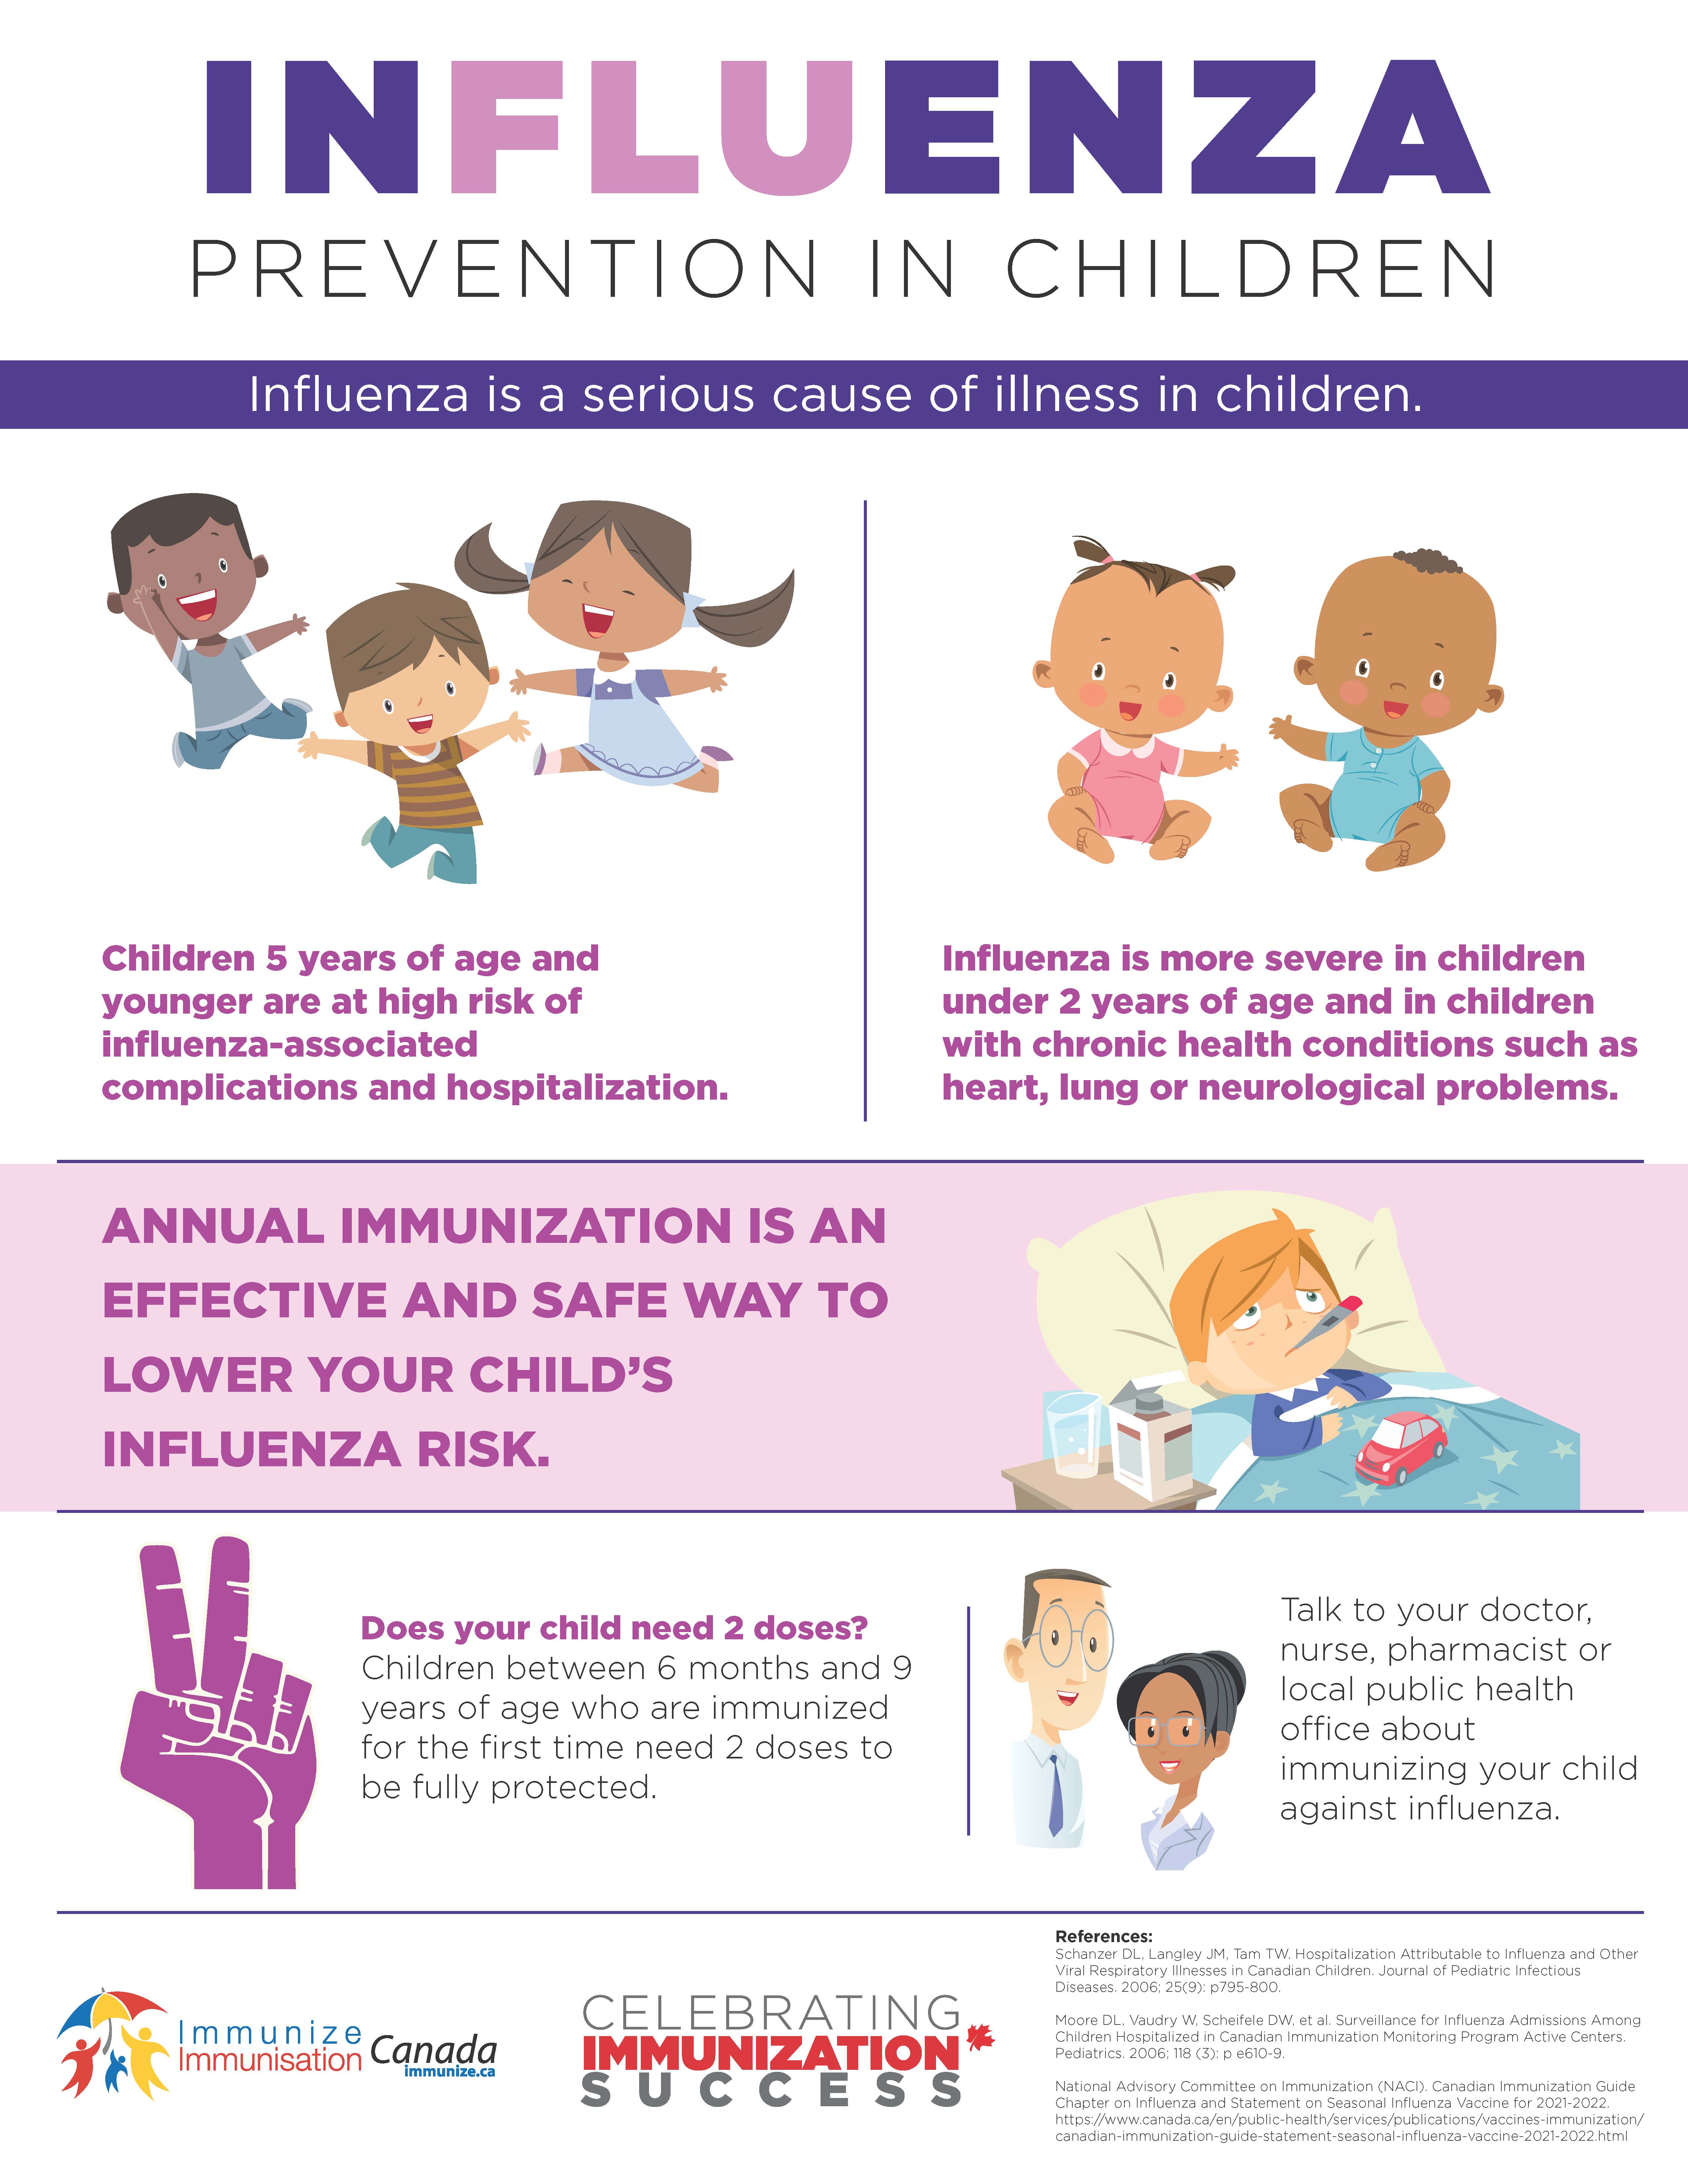 Influenza prevention in children - infographic